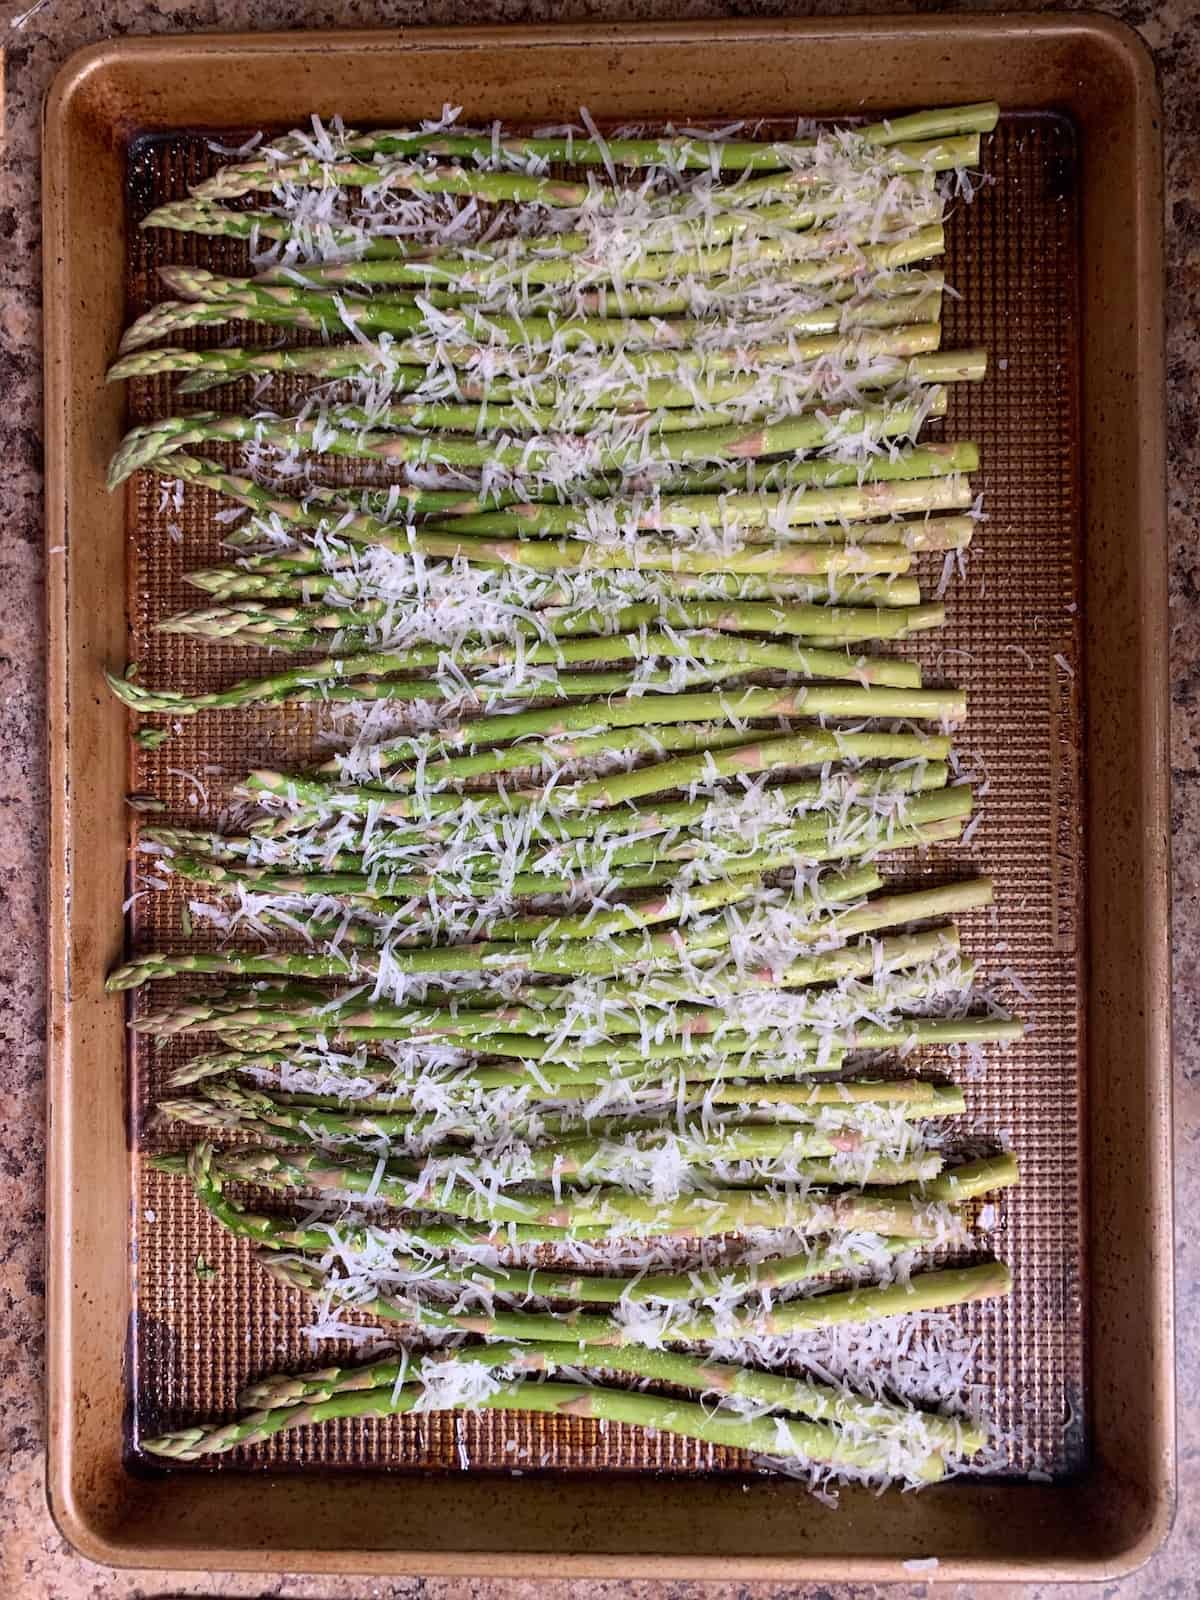 unbaked parmesan asparagus